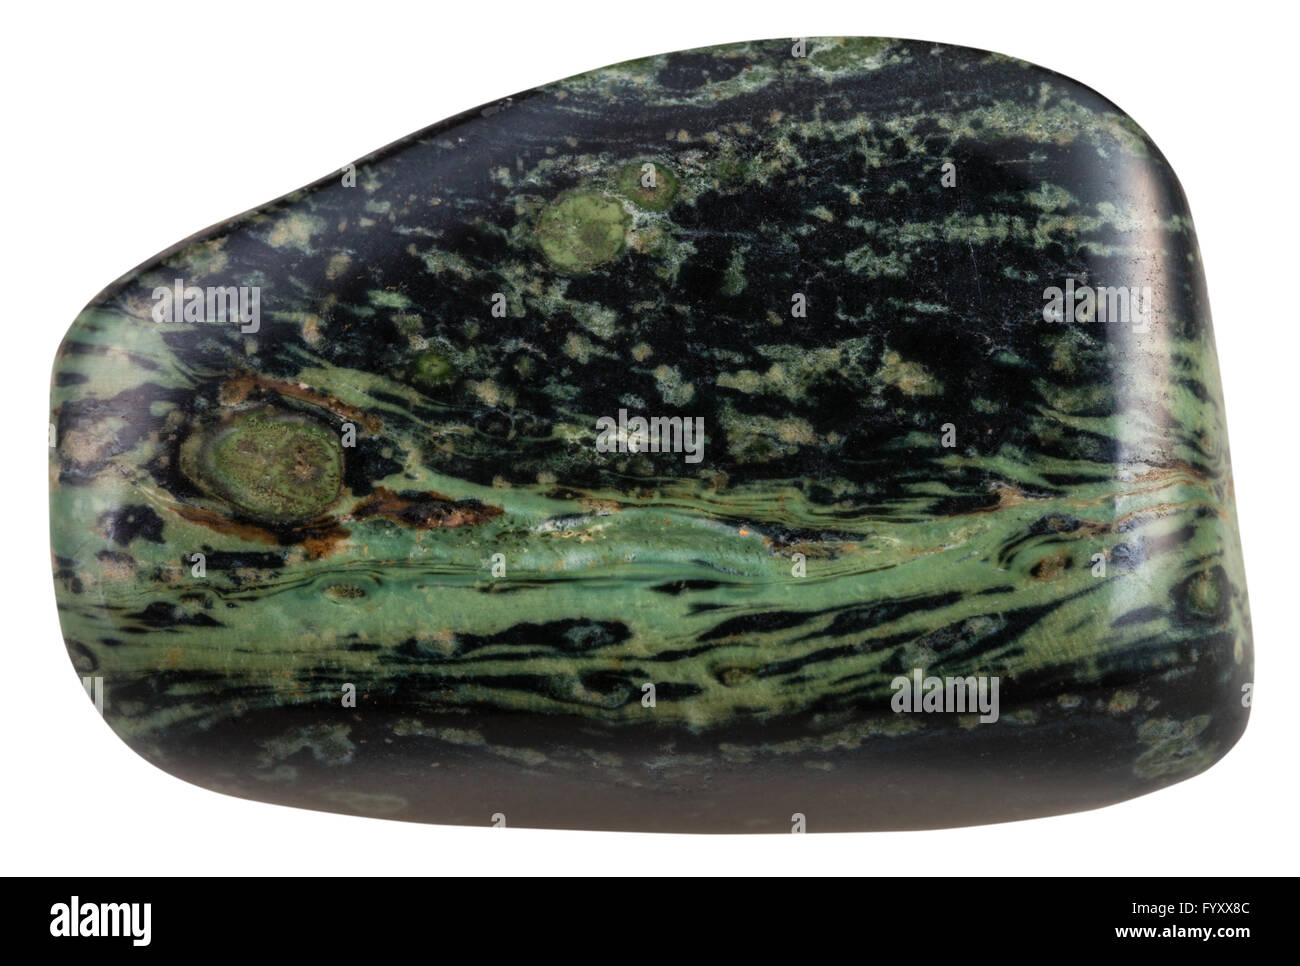 Makroaufnahmen von natürlichen Mineral Stein - poliert Kieselstein der grünen Rhyolit (Madagaskar-Jasper, Ozean-Jaspis) Edelstein isoliert Stockfoto